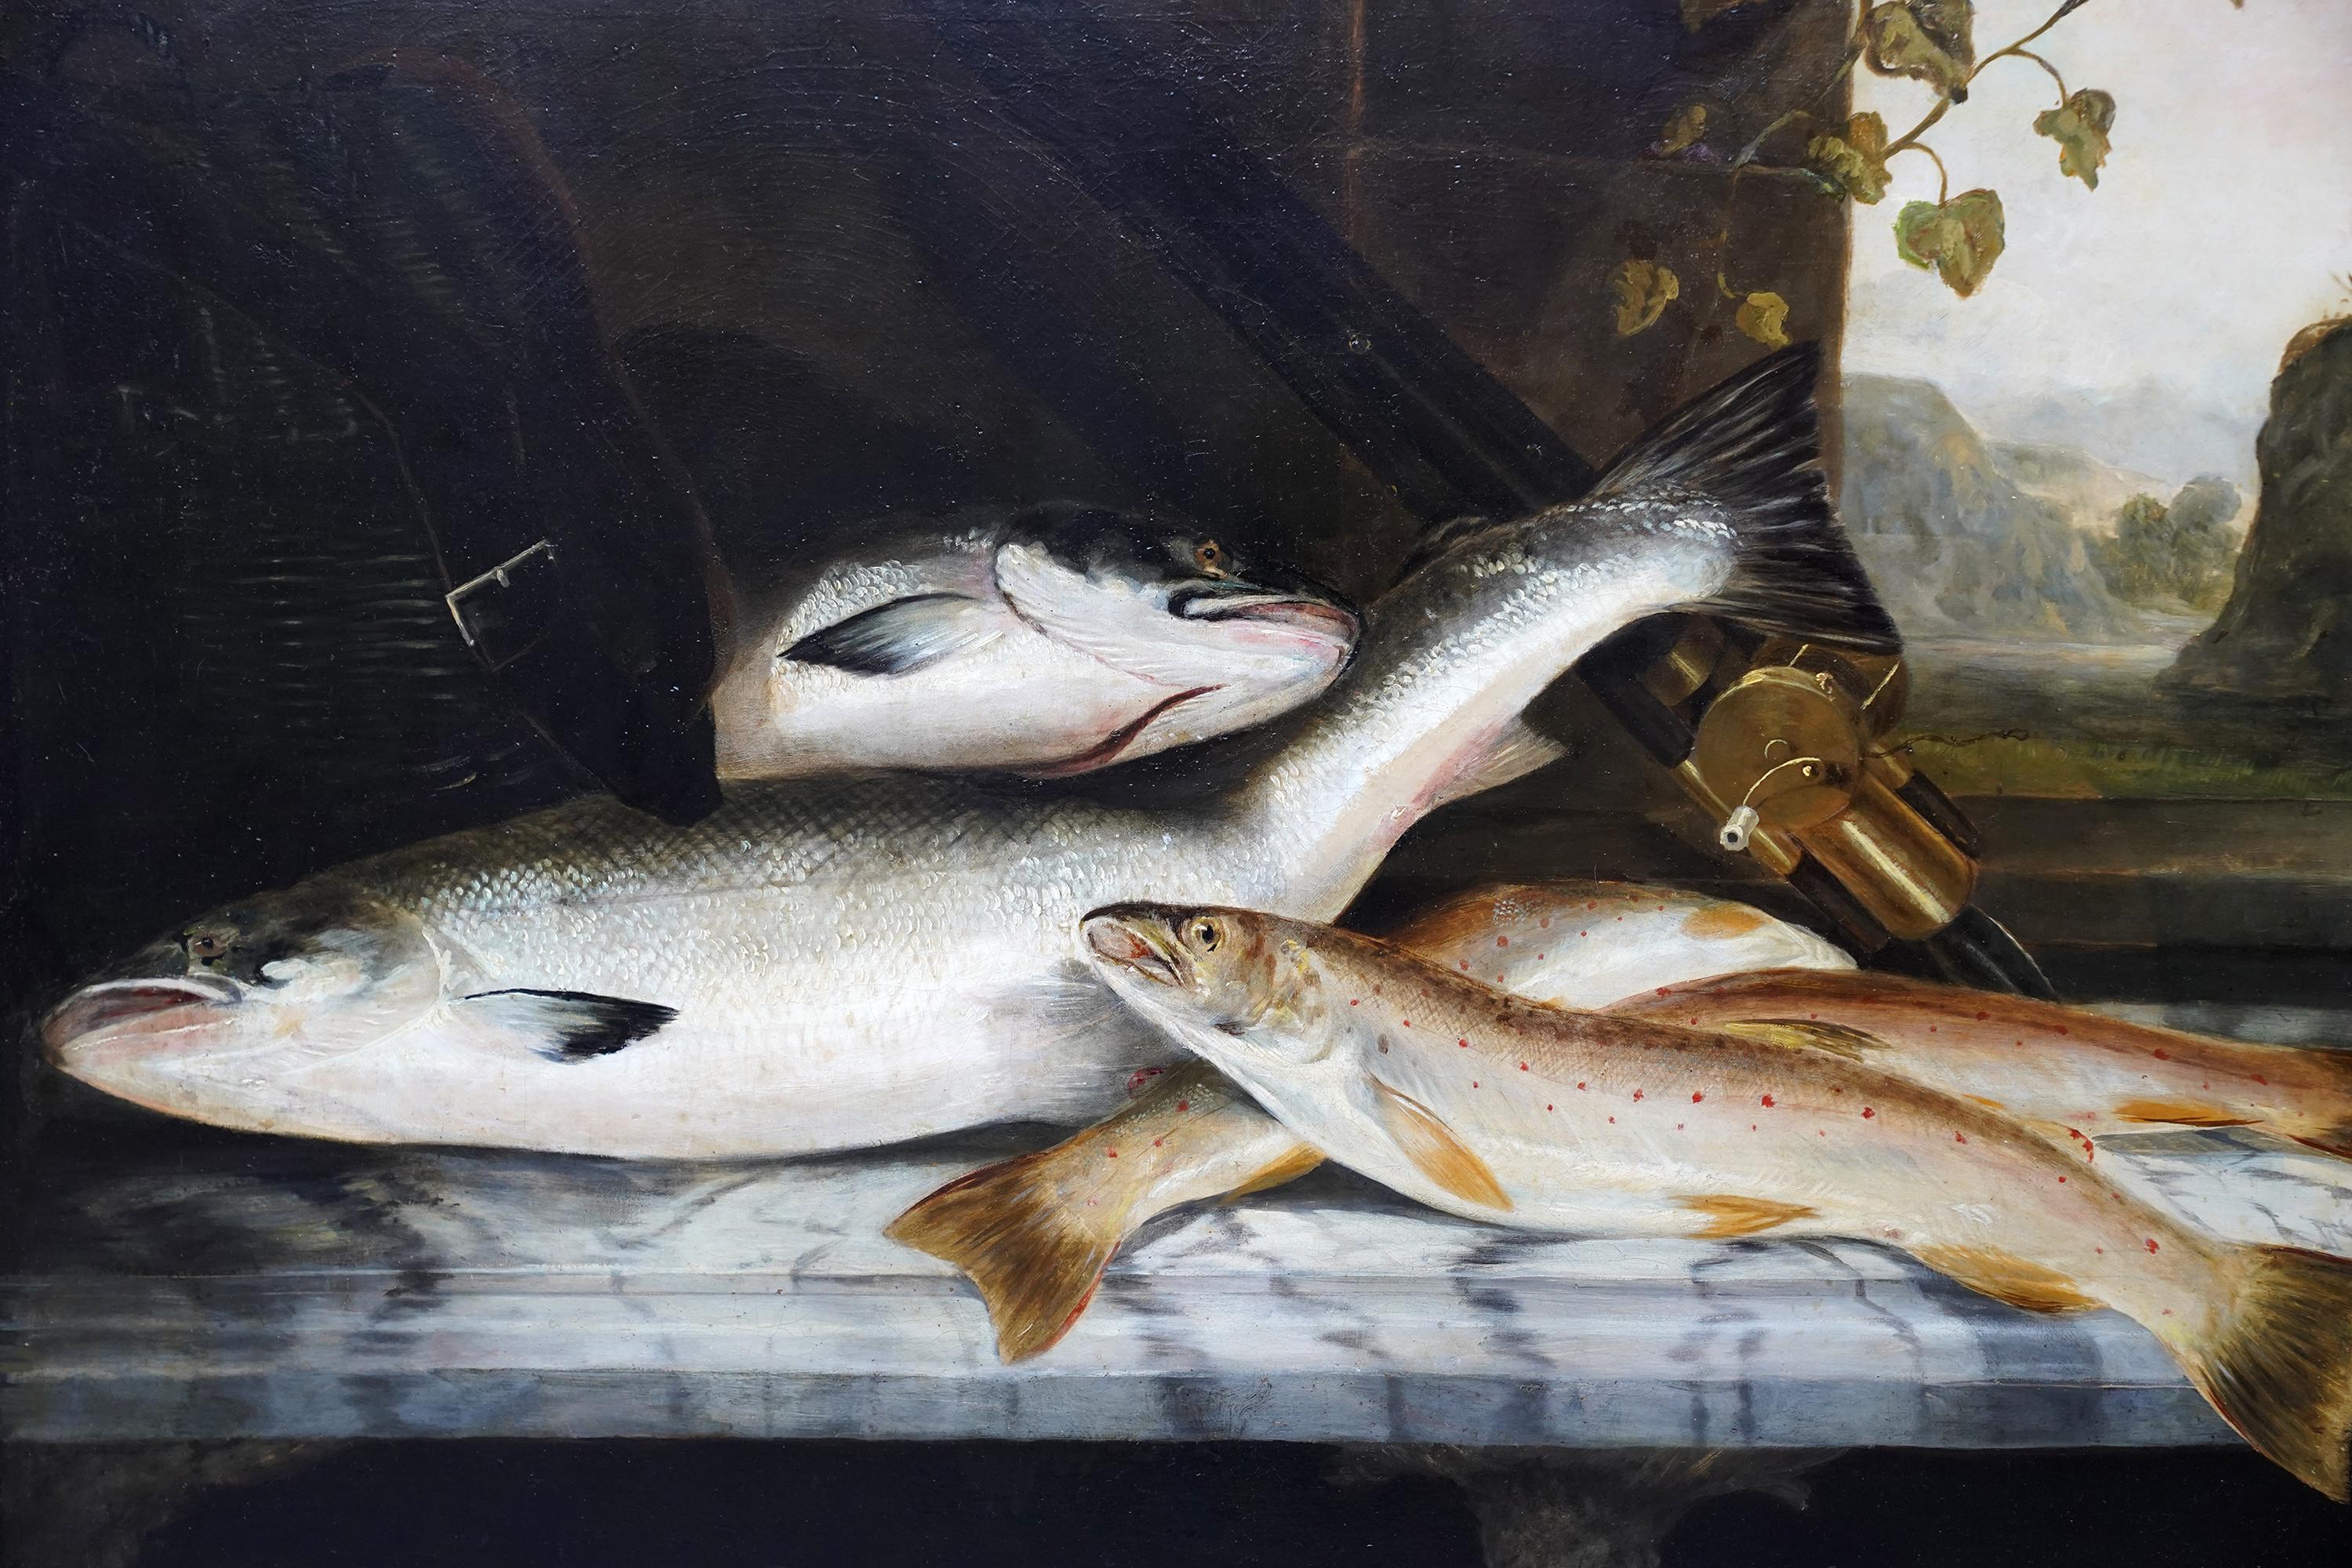 Dieses wunderschön komponierte britische Edwardianische Stillleben wird dem bekannten Fischkünstler Rowland Knight zugeschrieben. Es wurde um 1910 gemalt und zeigt ein Stillleben von Lachs und Regenbogenforelle mit all ihren schönen Zeichnungen. Die